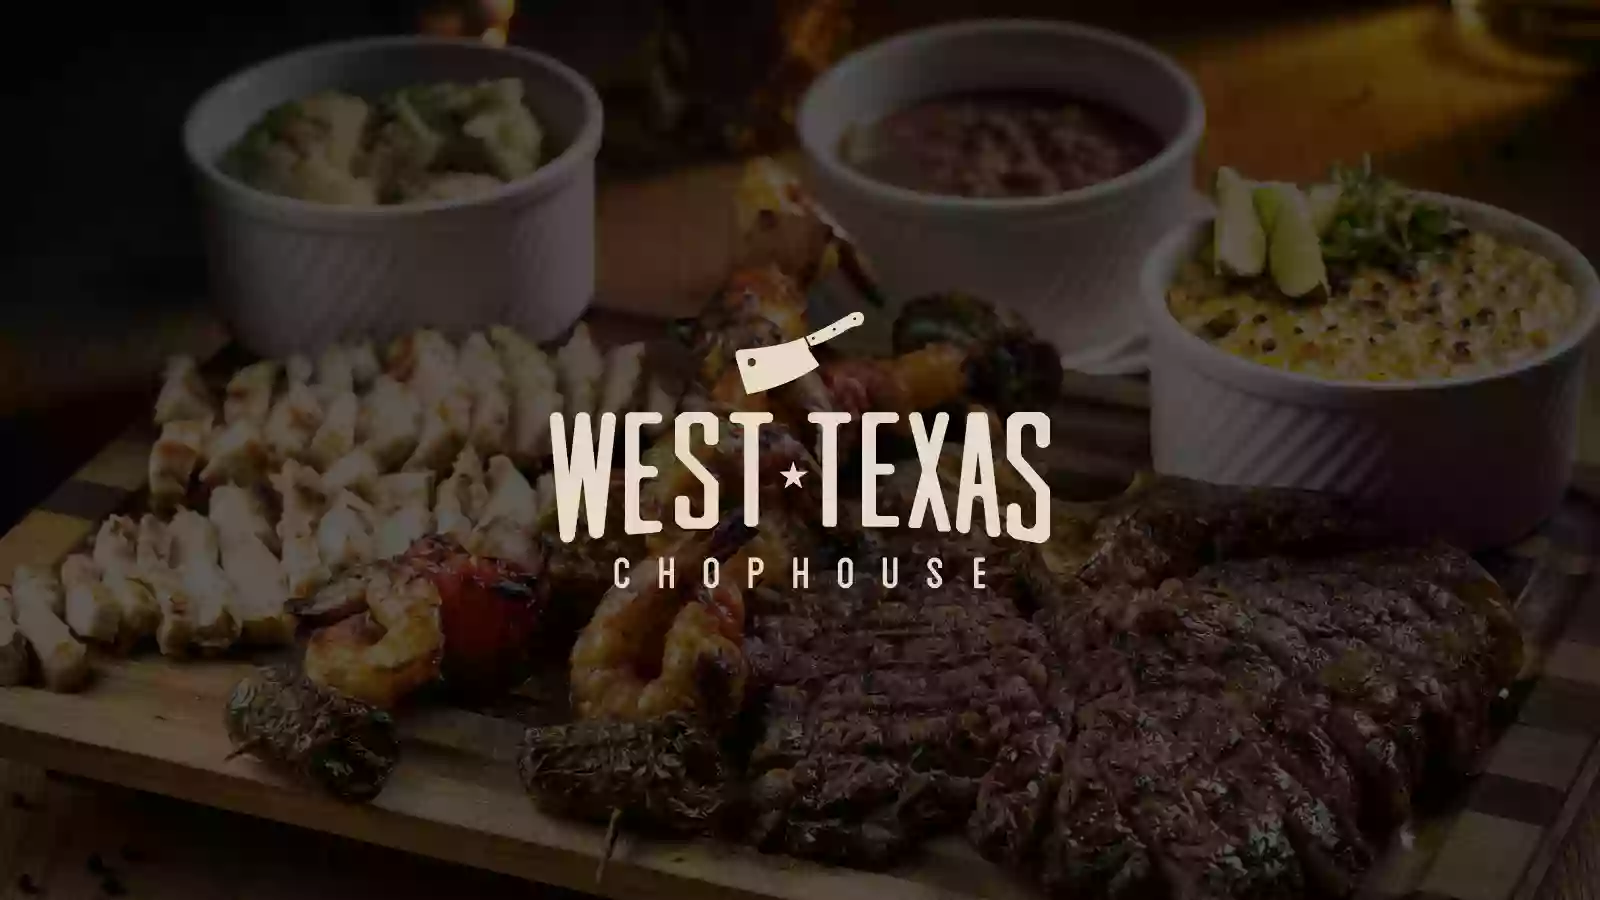 West Texas Chophouse